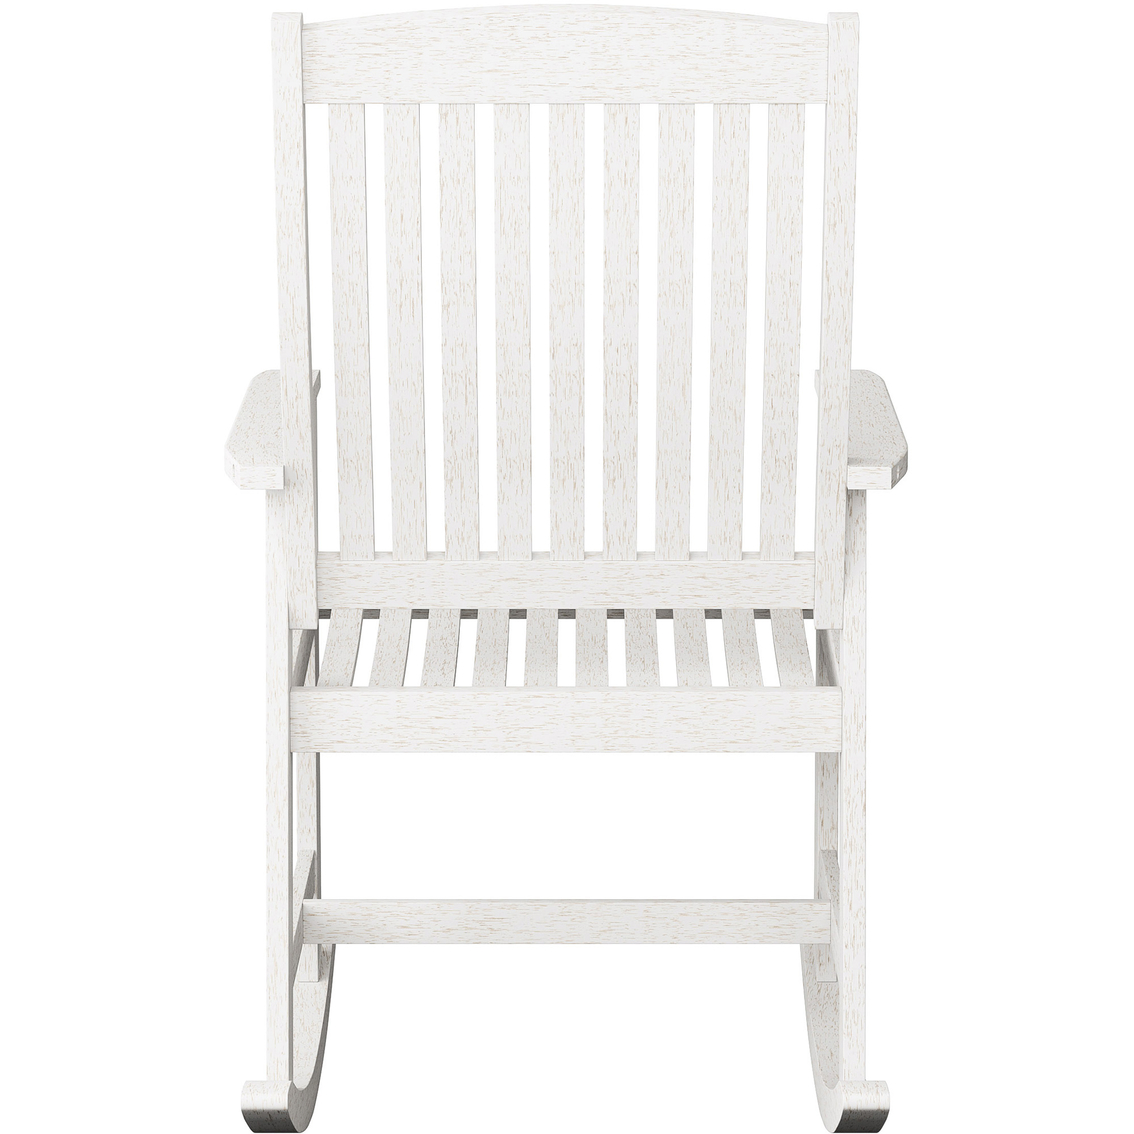 CorLiving Miramar Whitewashed Hardwood Outdoor Rocking Chair - Image 2 of 8